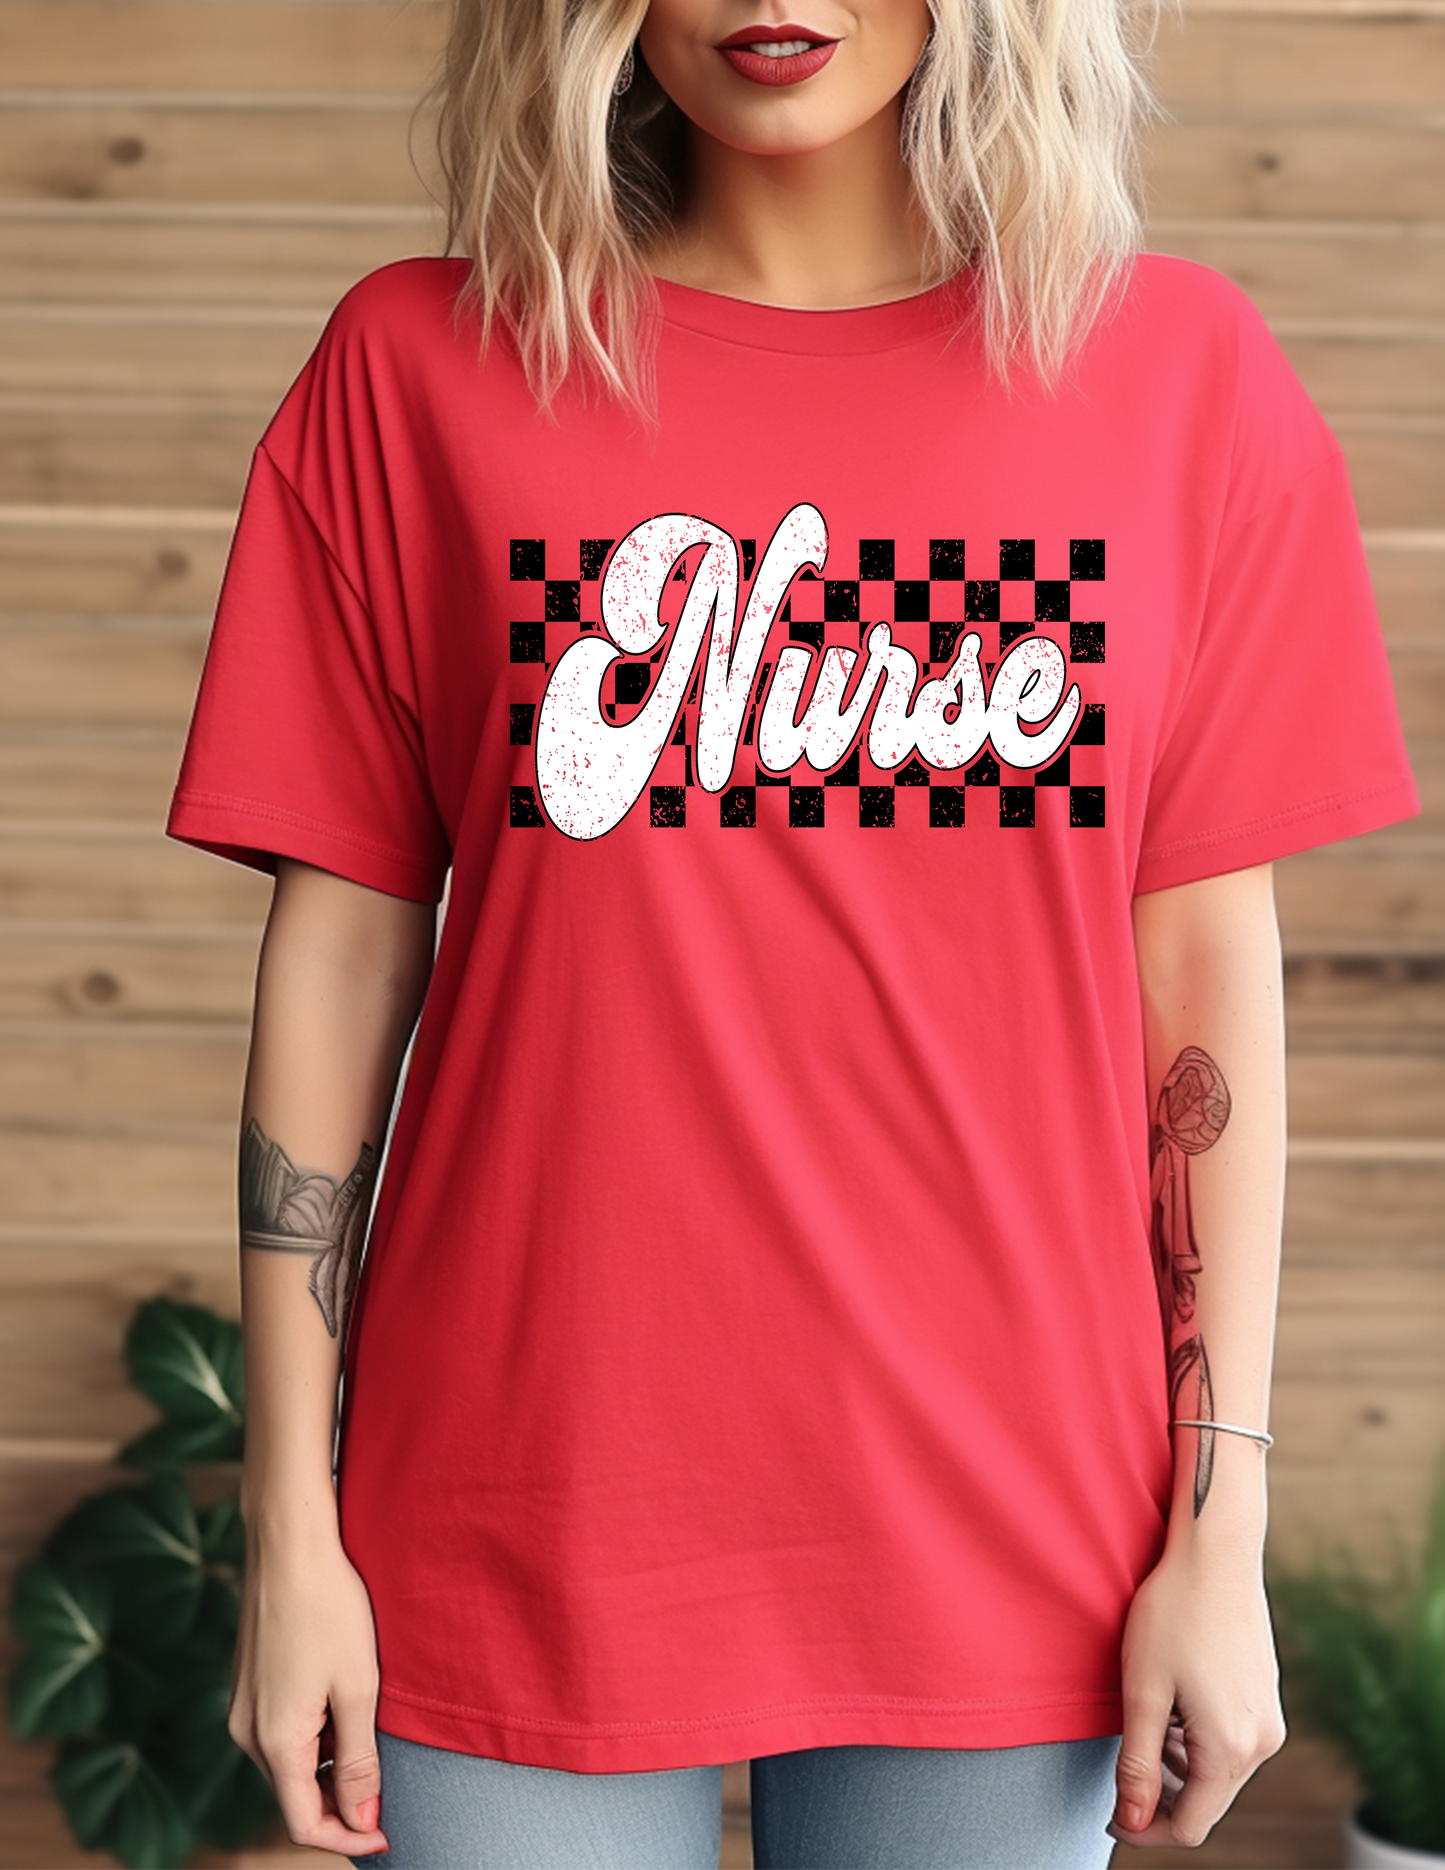 Nurse Checkered